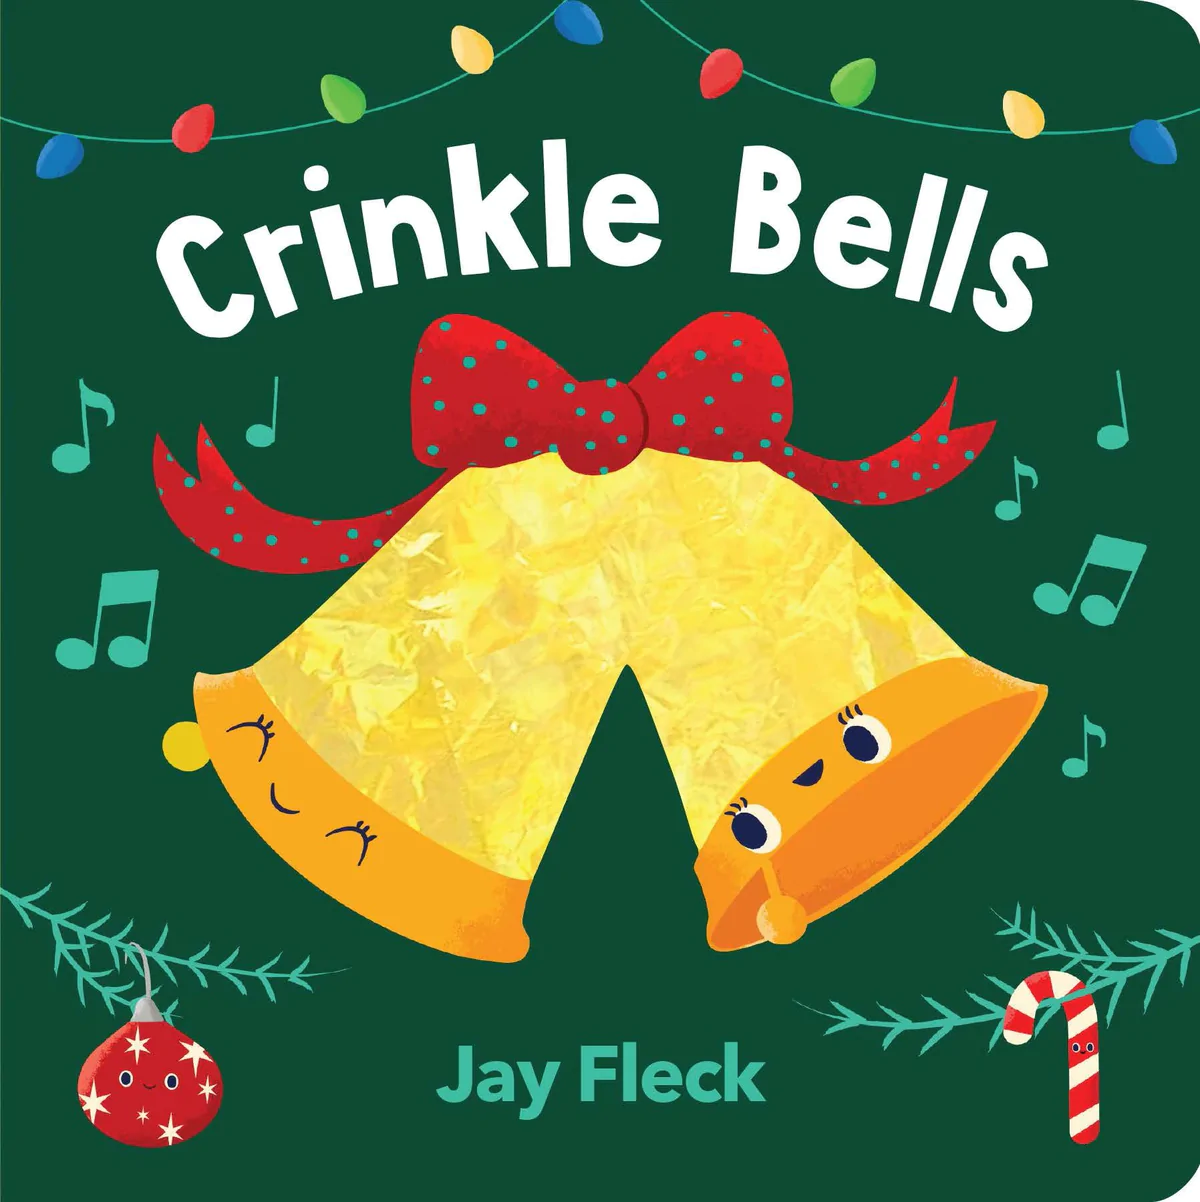 Crinkle Bells (0+)